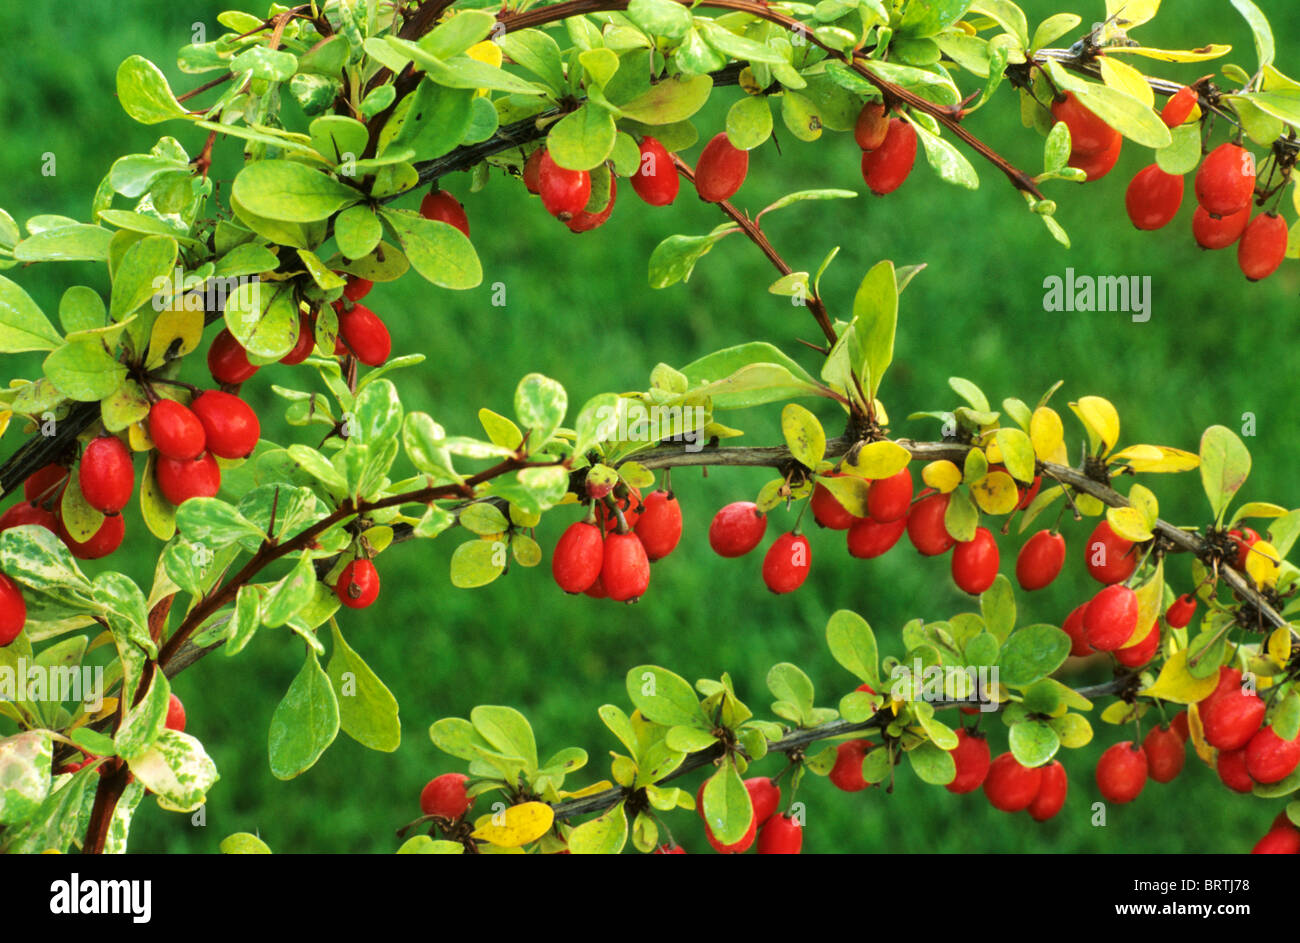 Berberis thunbergii 'Baum" crespino bacca rossa frutta frutti di bosco giardino dei frutti di piante vegetali barberries Foto Stock